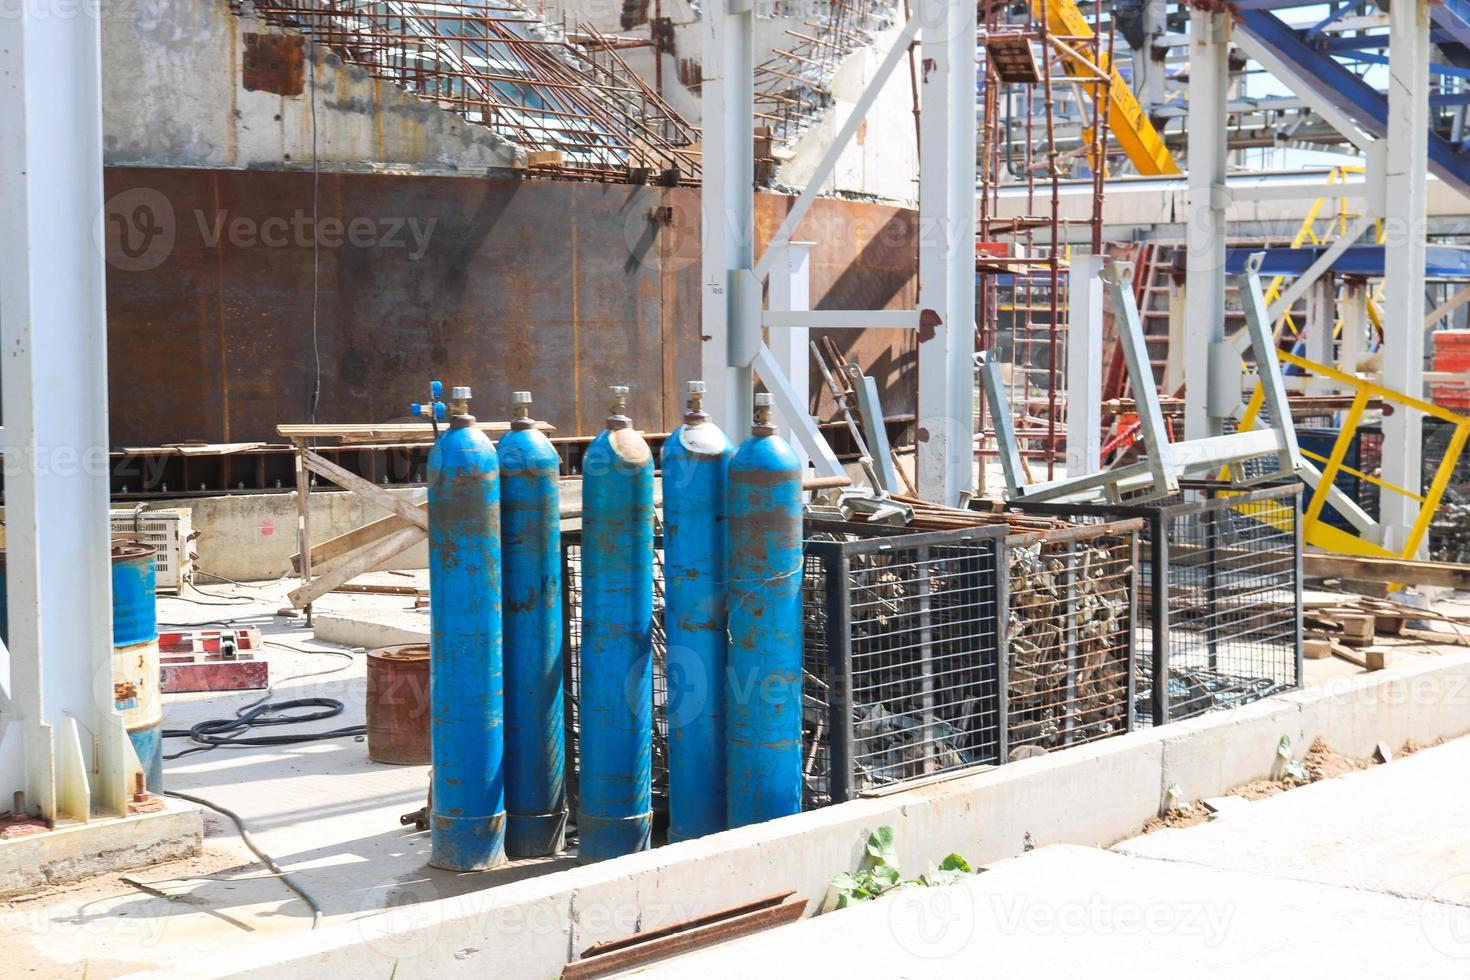 cilindros de metal de hierro azul con gas licuado oxígeno oxígeno aire helio argón para soldar en la planta petroquímica de refinería foto